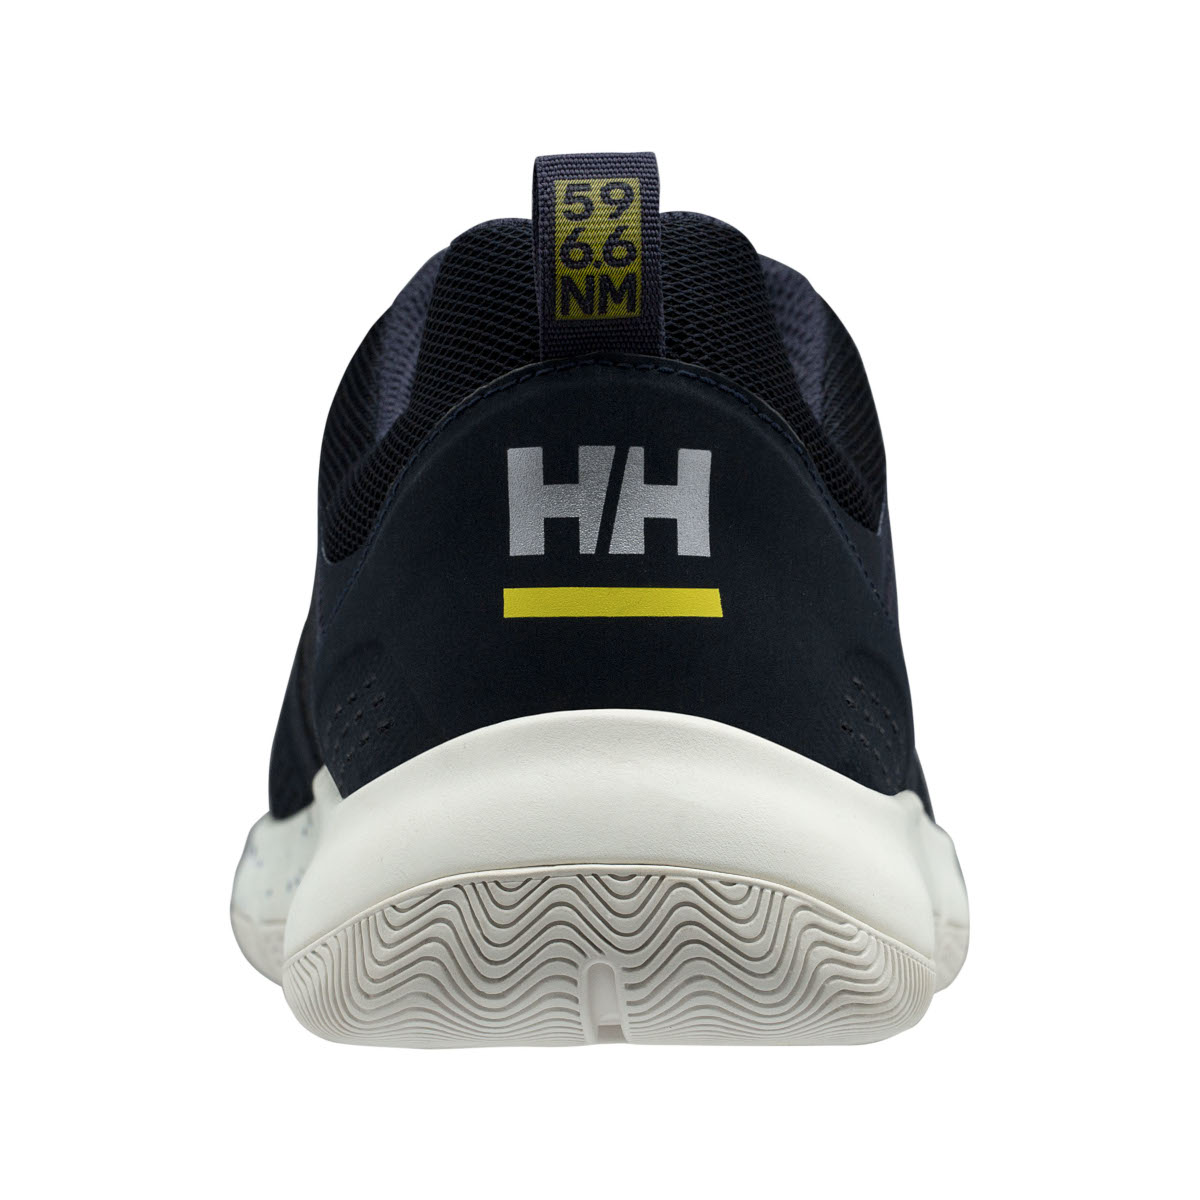 Helly Hansen Skagen F-1 chaussures de voile offshore hommes bleu marine, taille 43